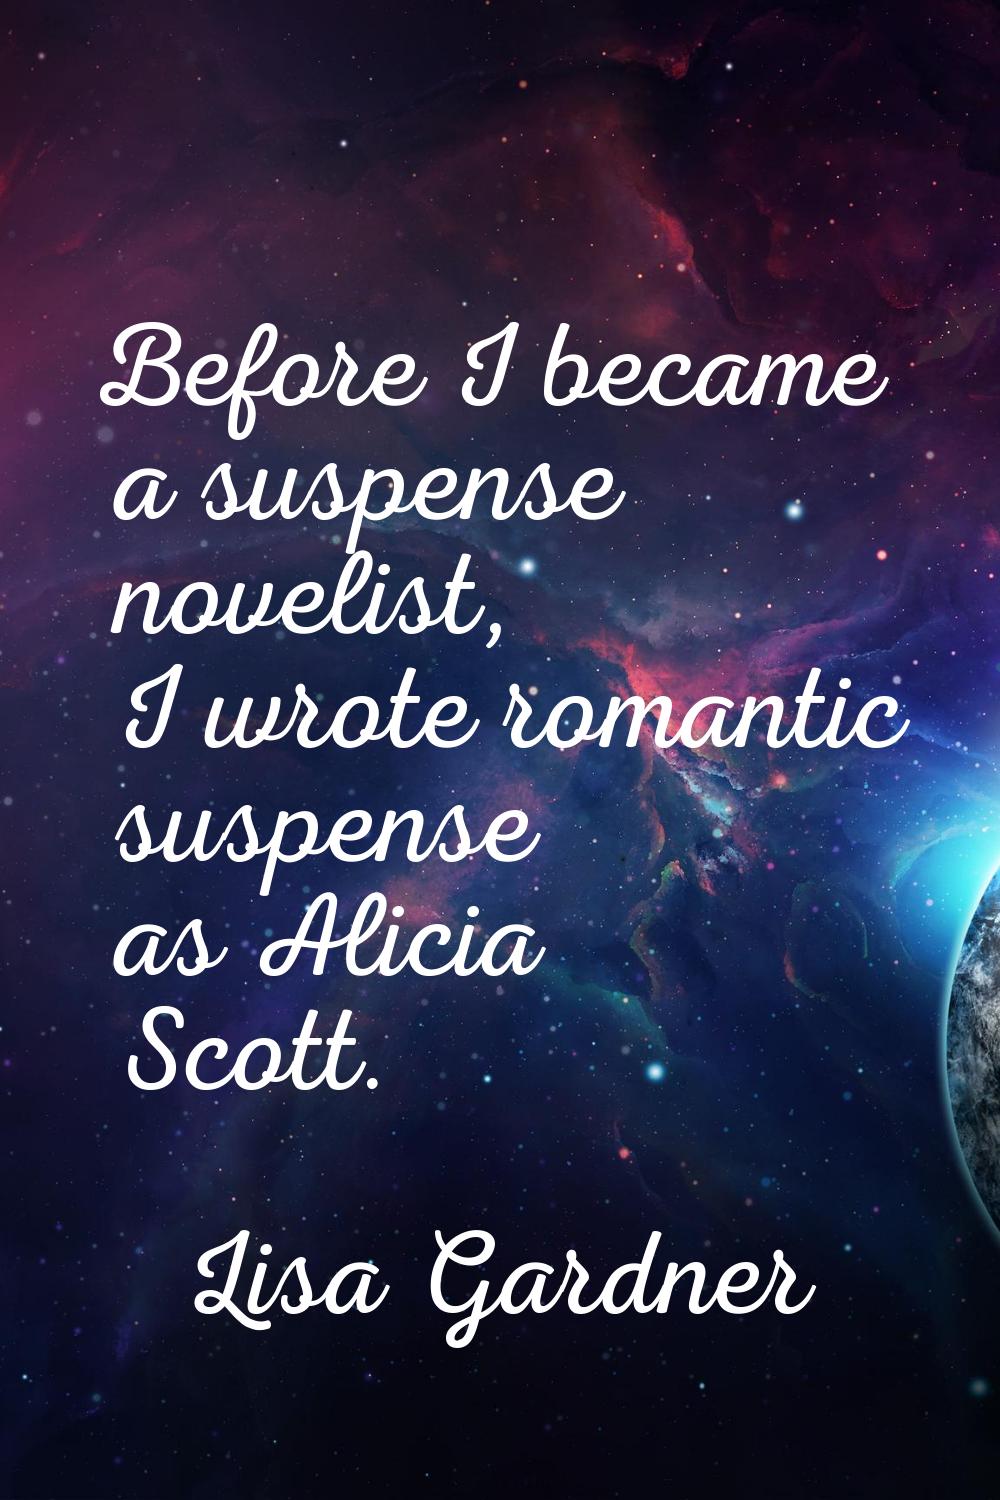 Before I became a suspense novelist, I wrote romantic suspense as Alicia Scott.